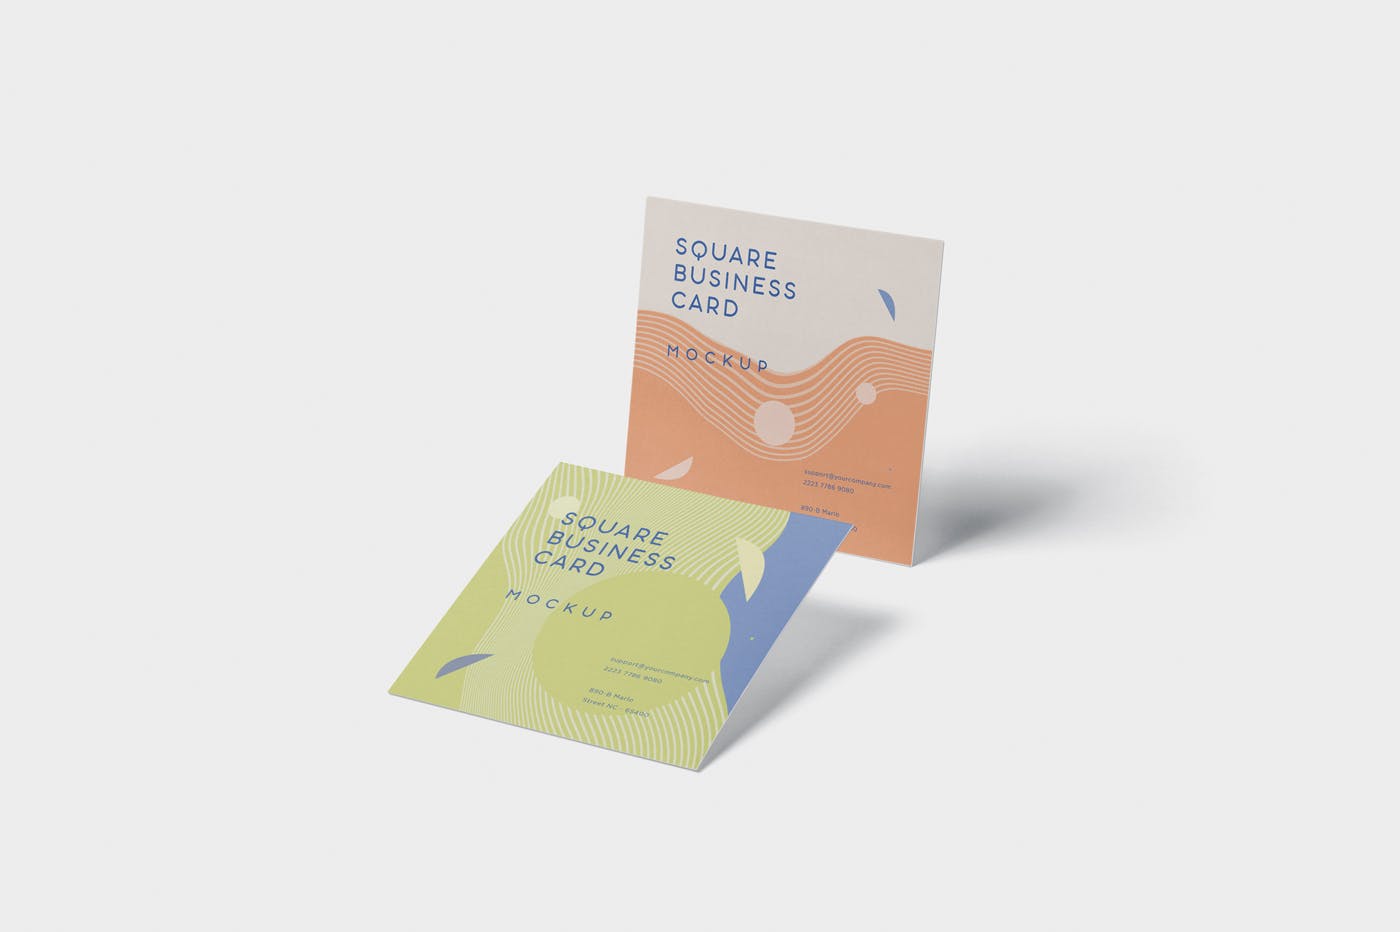 正方形创意企业名片设计阴影效果图样机 Business Card Mockup in Square Format插图3